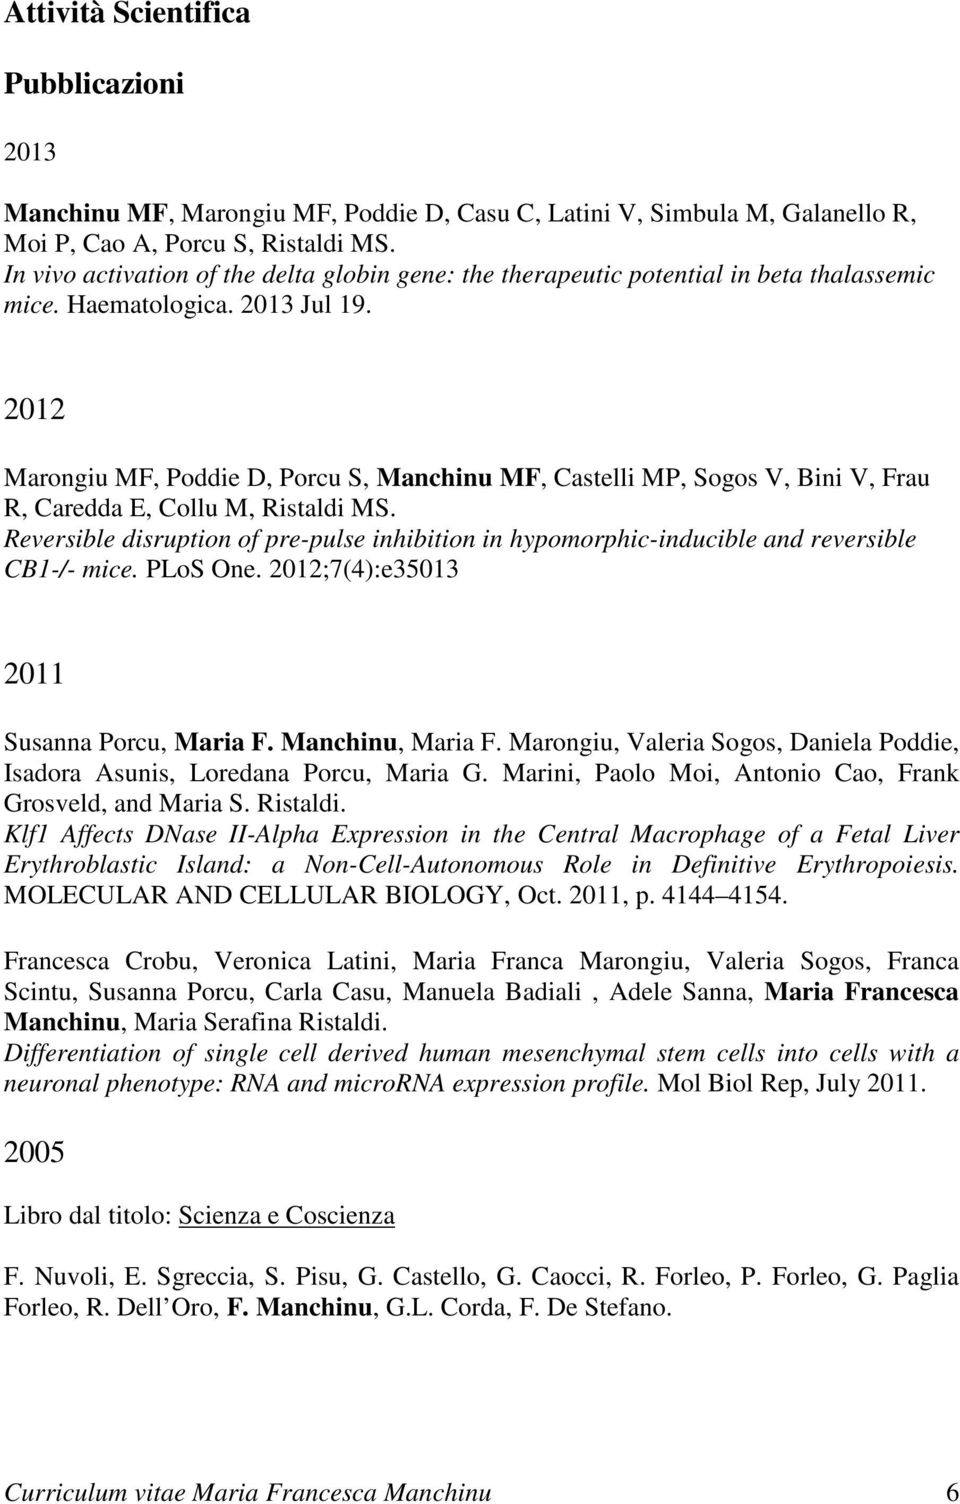 2012 Marongiu MF, Poddie D, Porcu S, Manchinu MF, Castelli MP, Sogos V, Bini V, Frau R, Caredda E, Collu M, Ristaldi MS.